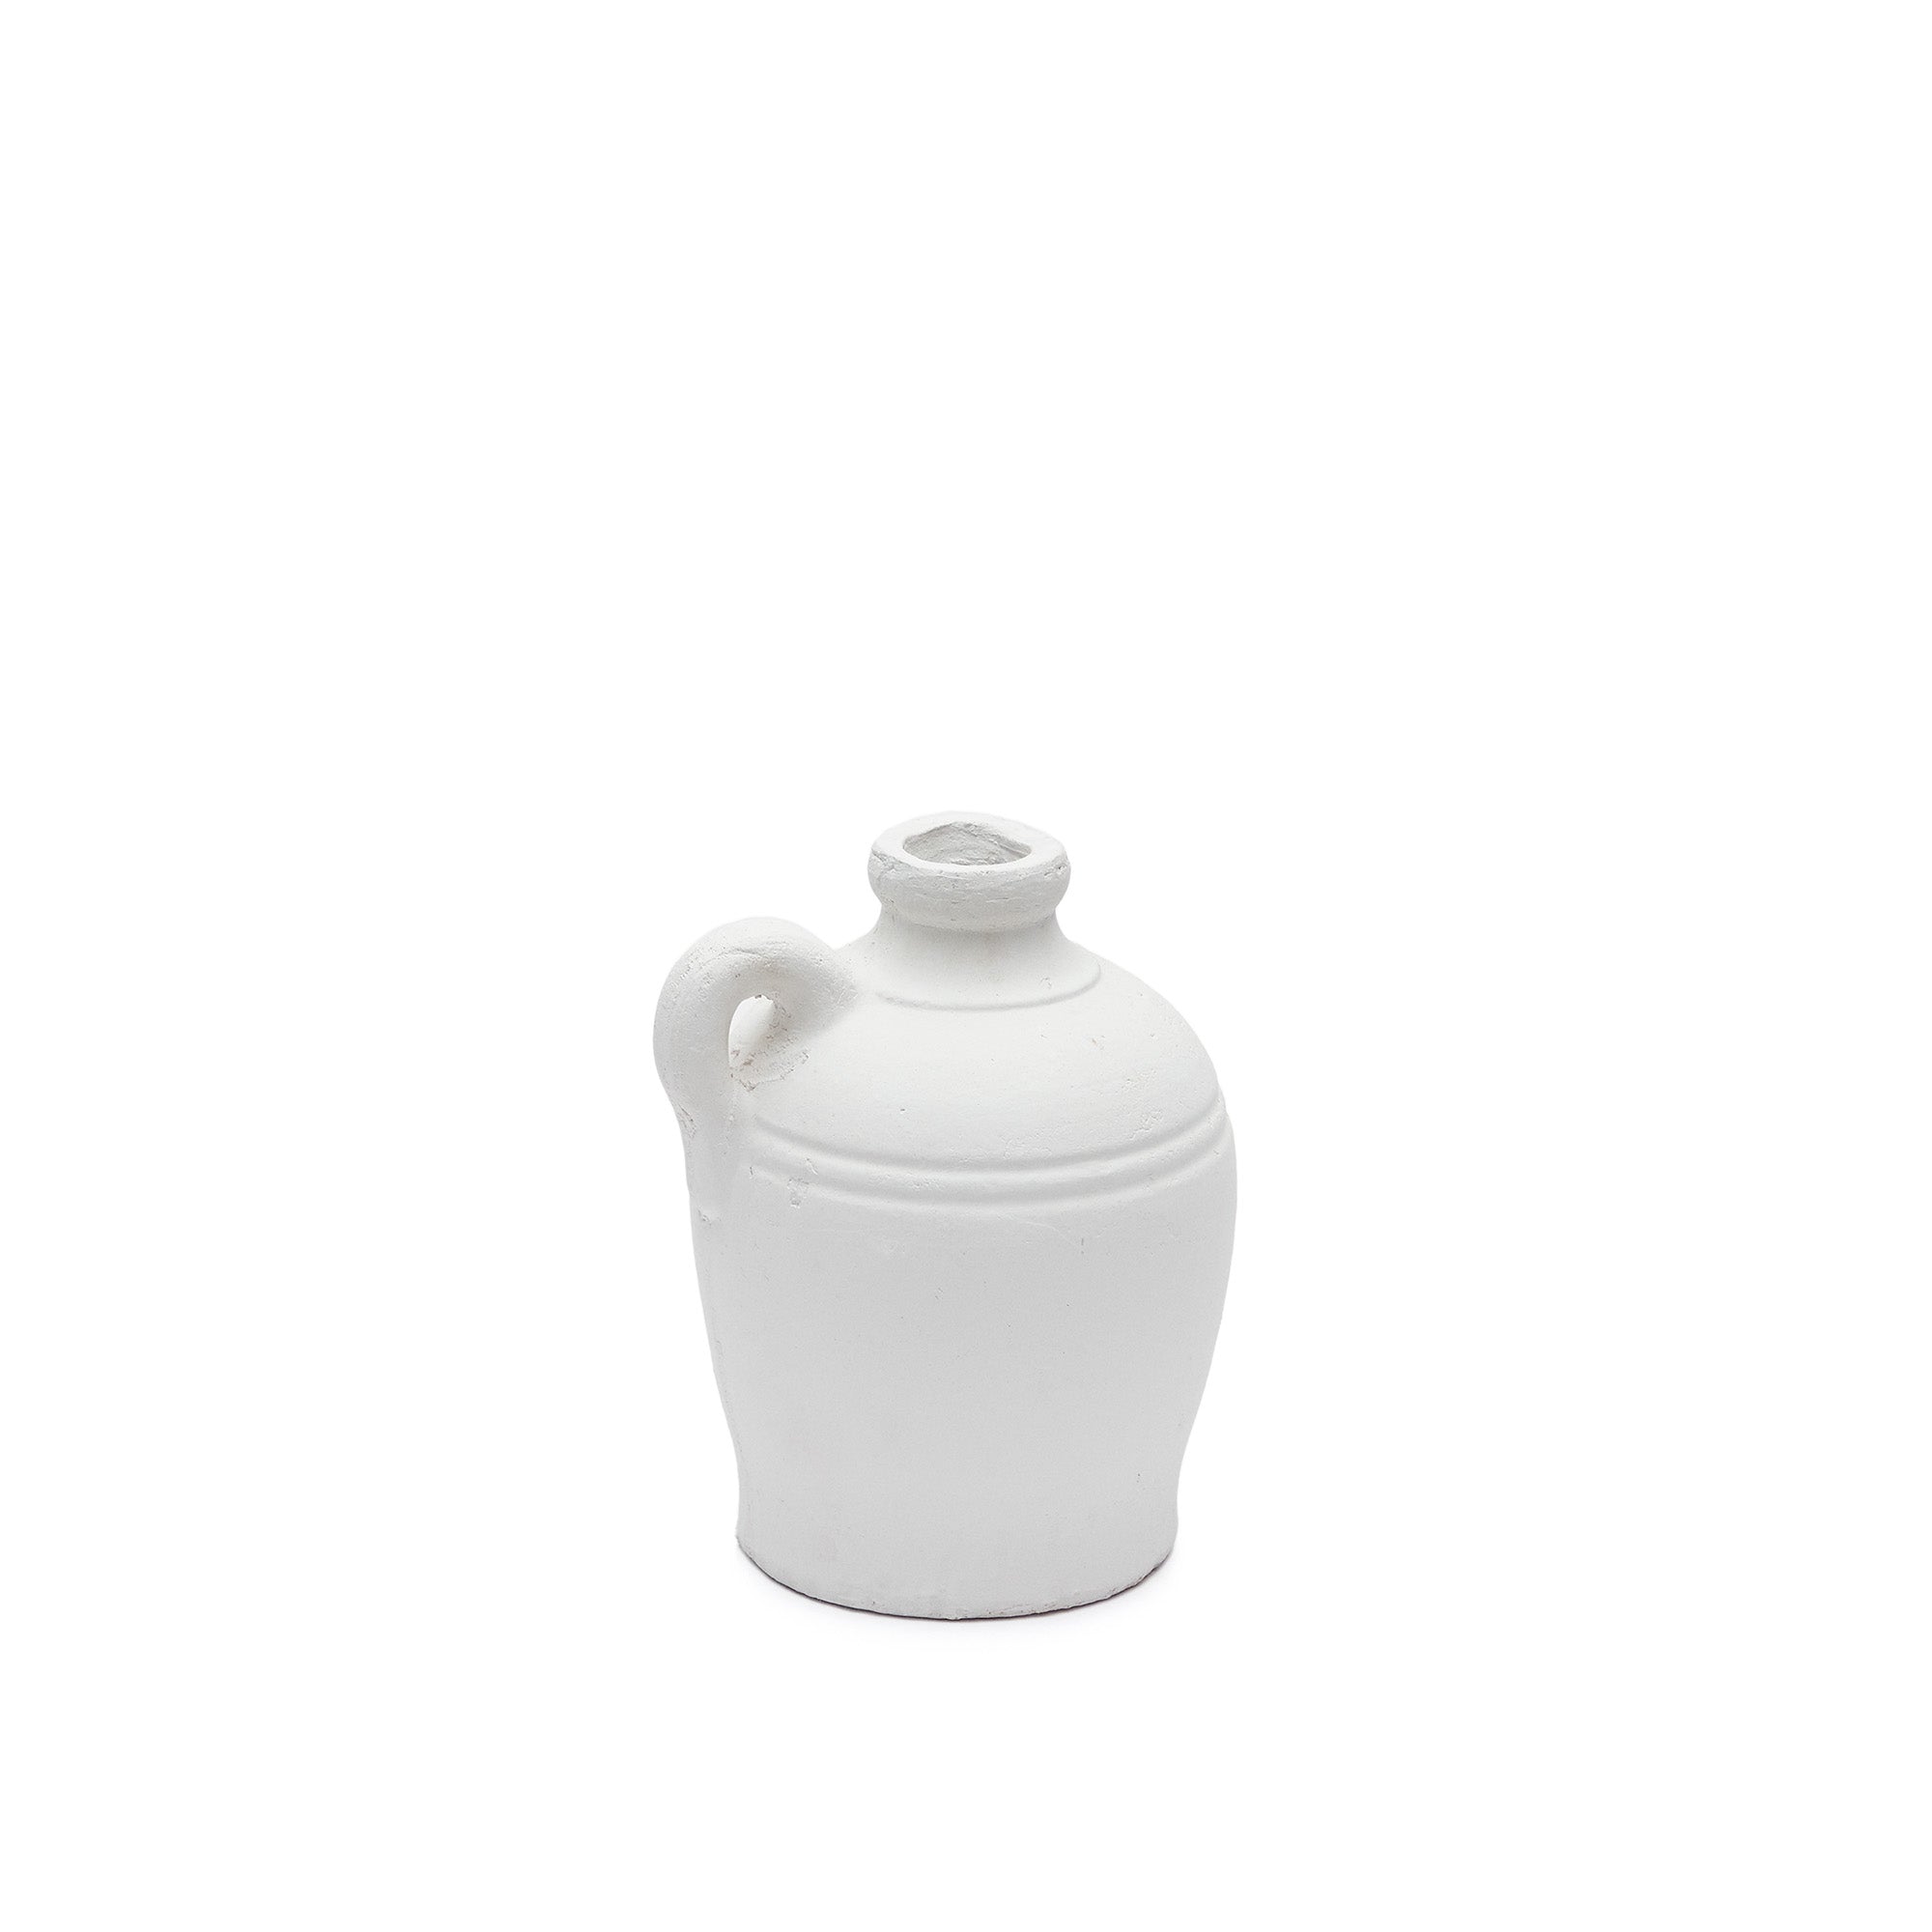 Palafrugell terracotta vase in white, 24 cm